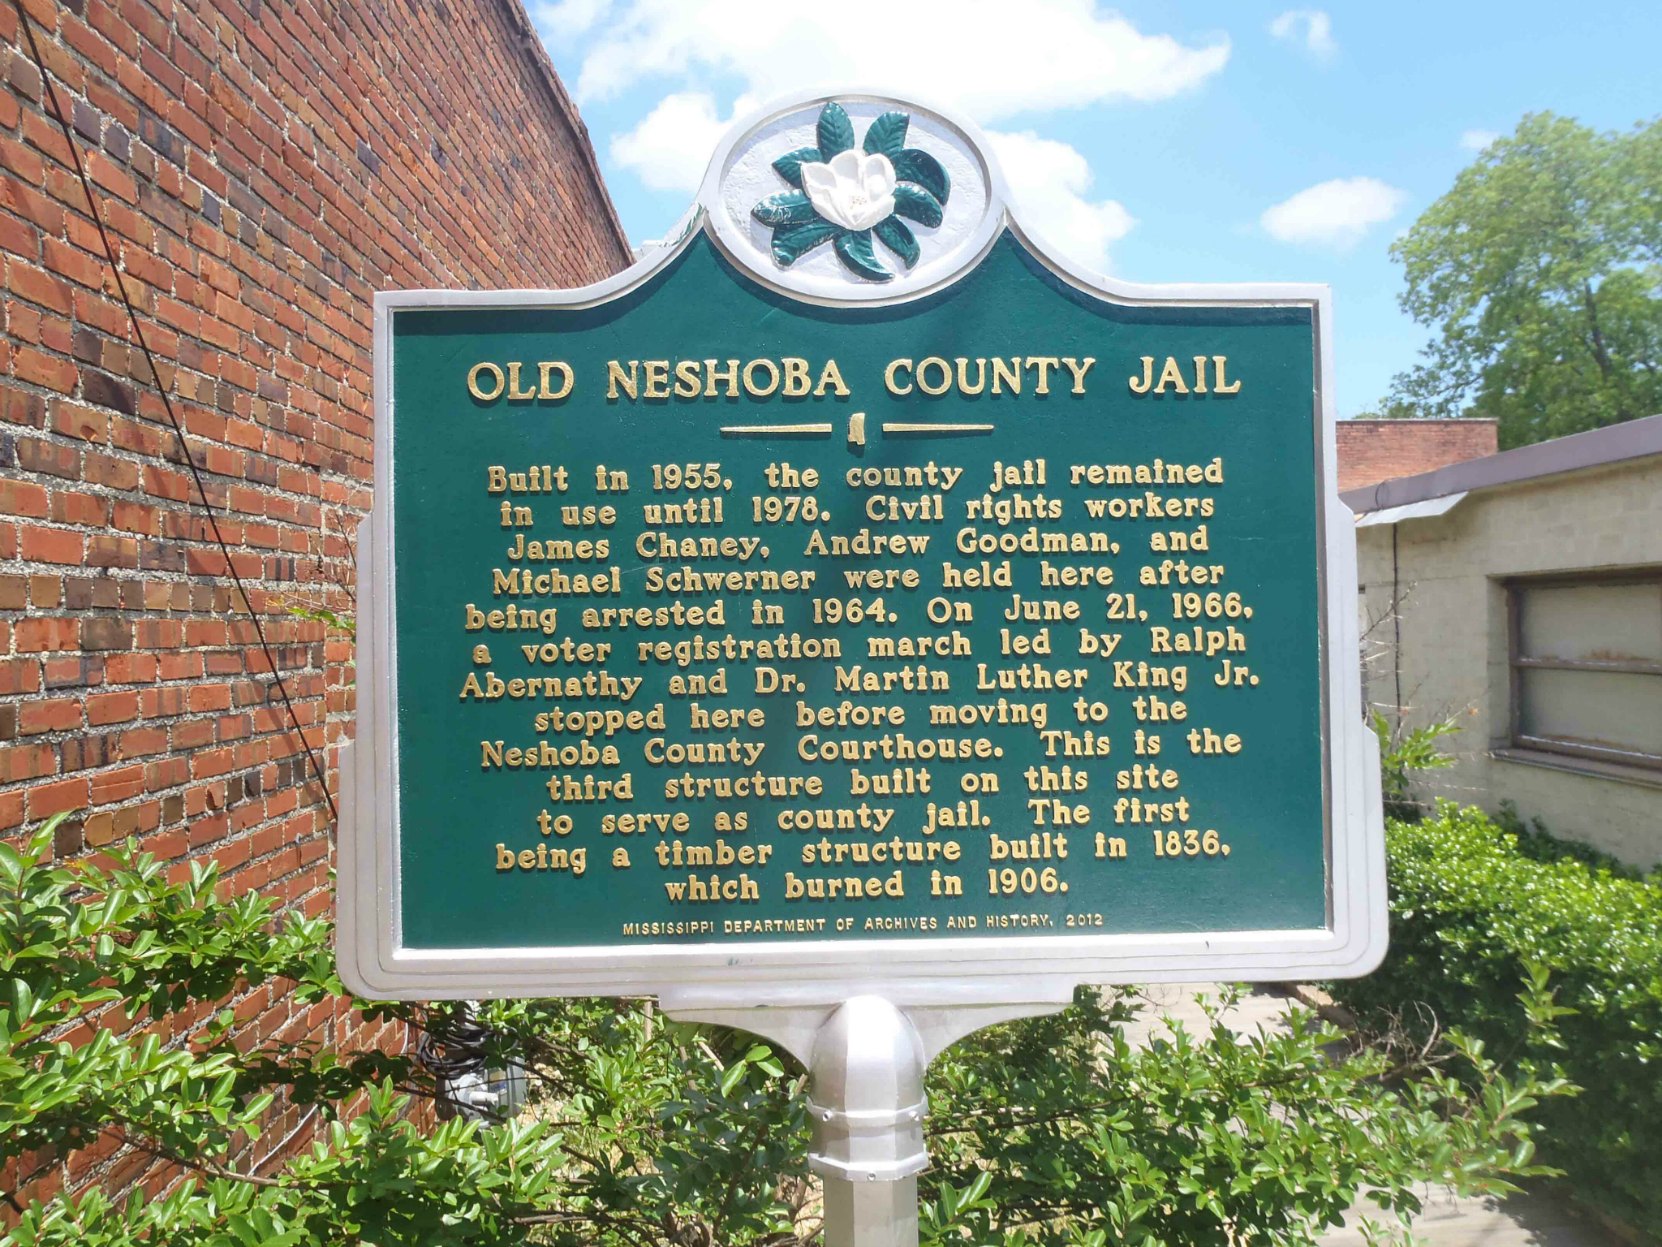 Mississippi Department of Archives & History marker for Old Neshoba County Jail, Philadelphia, Neshoba County, Mississippi.